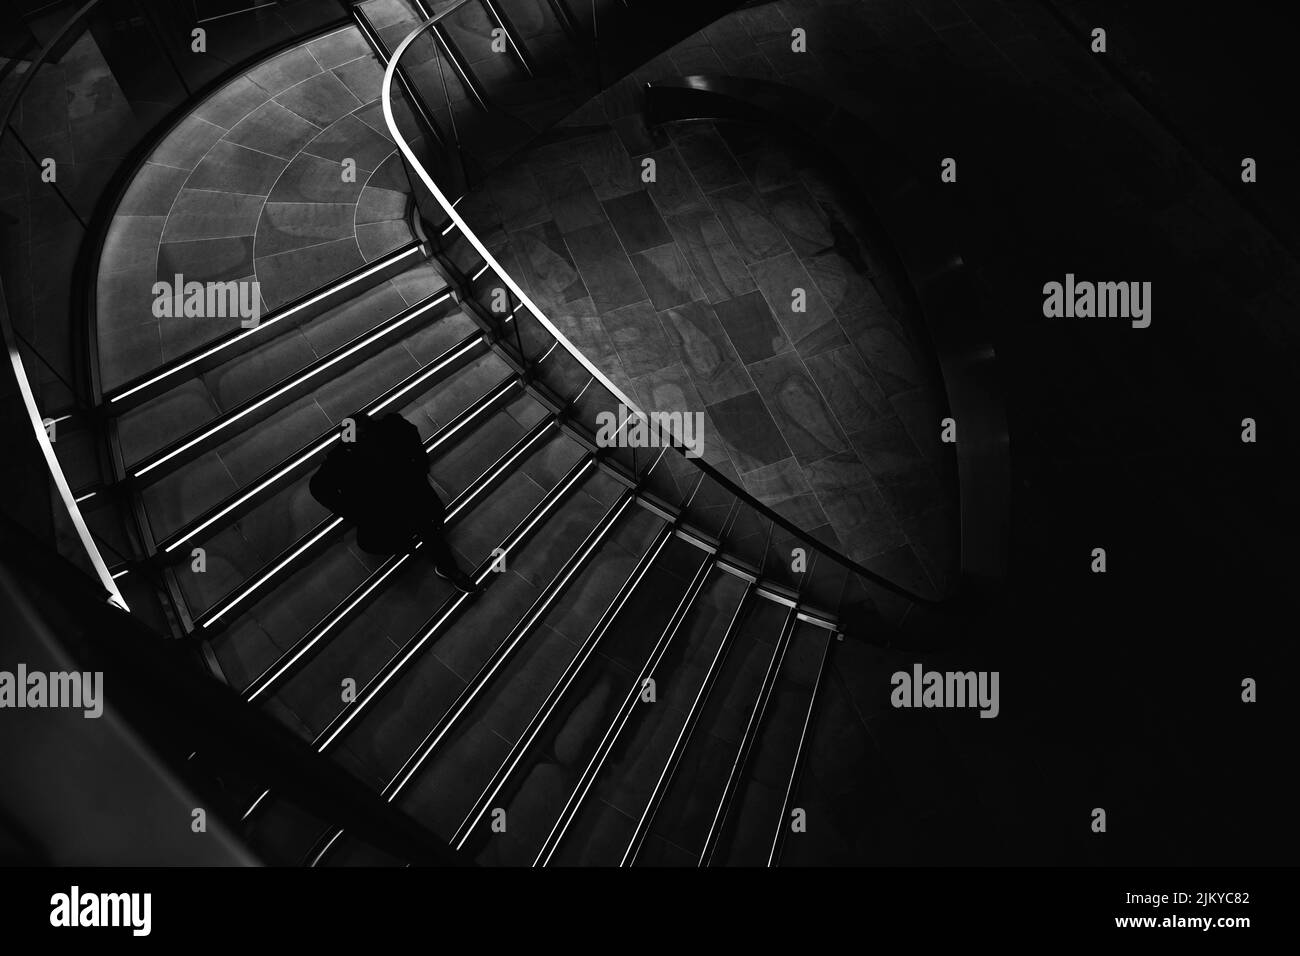 Una vista in scala di grigi di una persona che scende le scale in un edificio Foto Stock